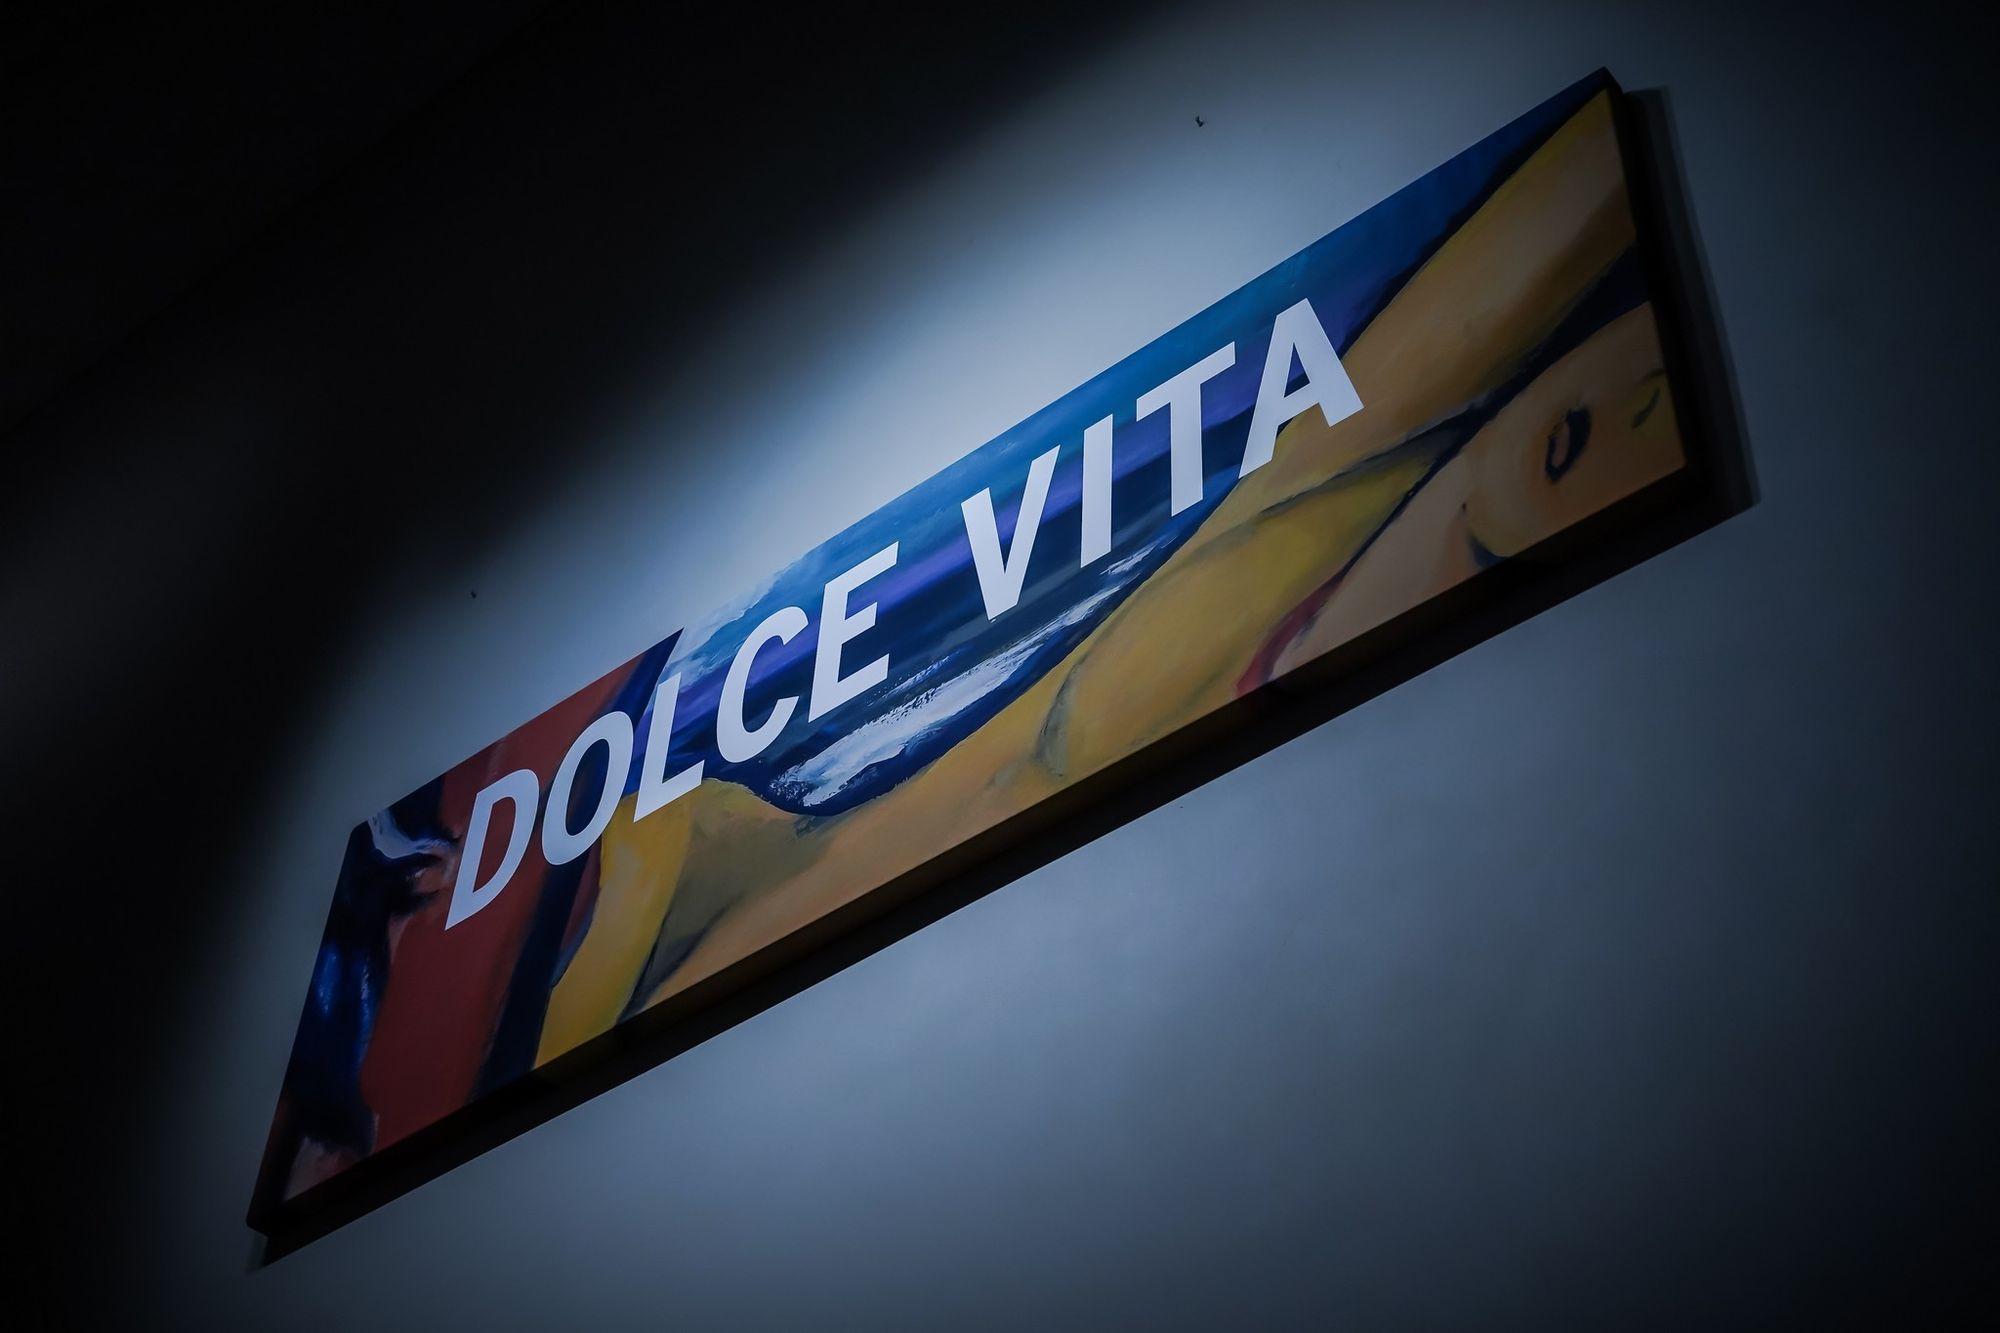 Dolce Vita Exhibition_Lopresto Collection_01